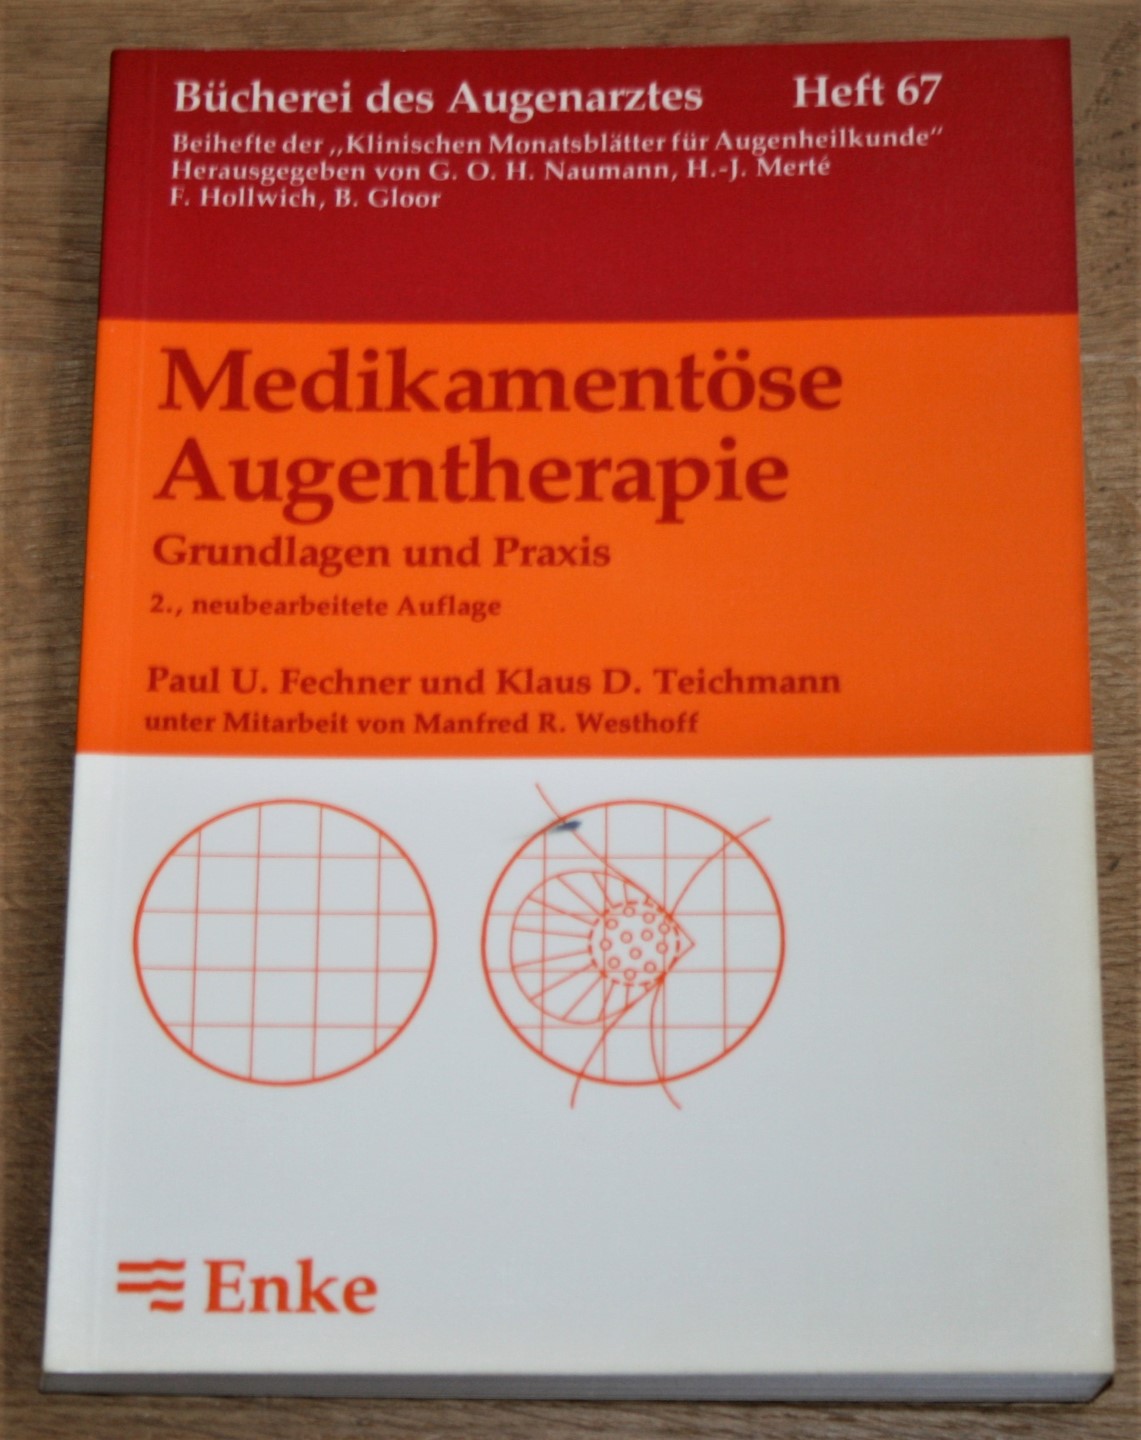 Bücherei des Augenarztes Heft 67. Medikamentöse Augentherapie. Grundlagen und Praxis. - Fechner, Paul U. und Klaus D. Teichmann